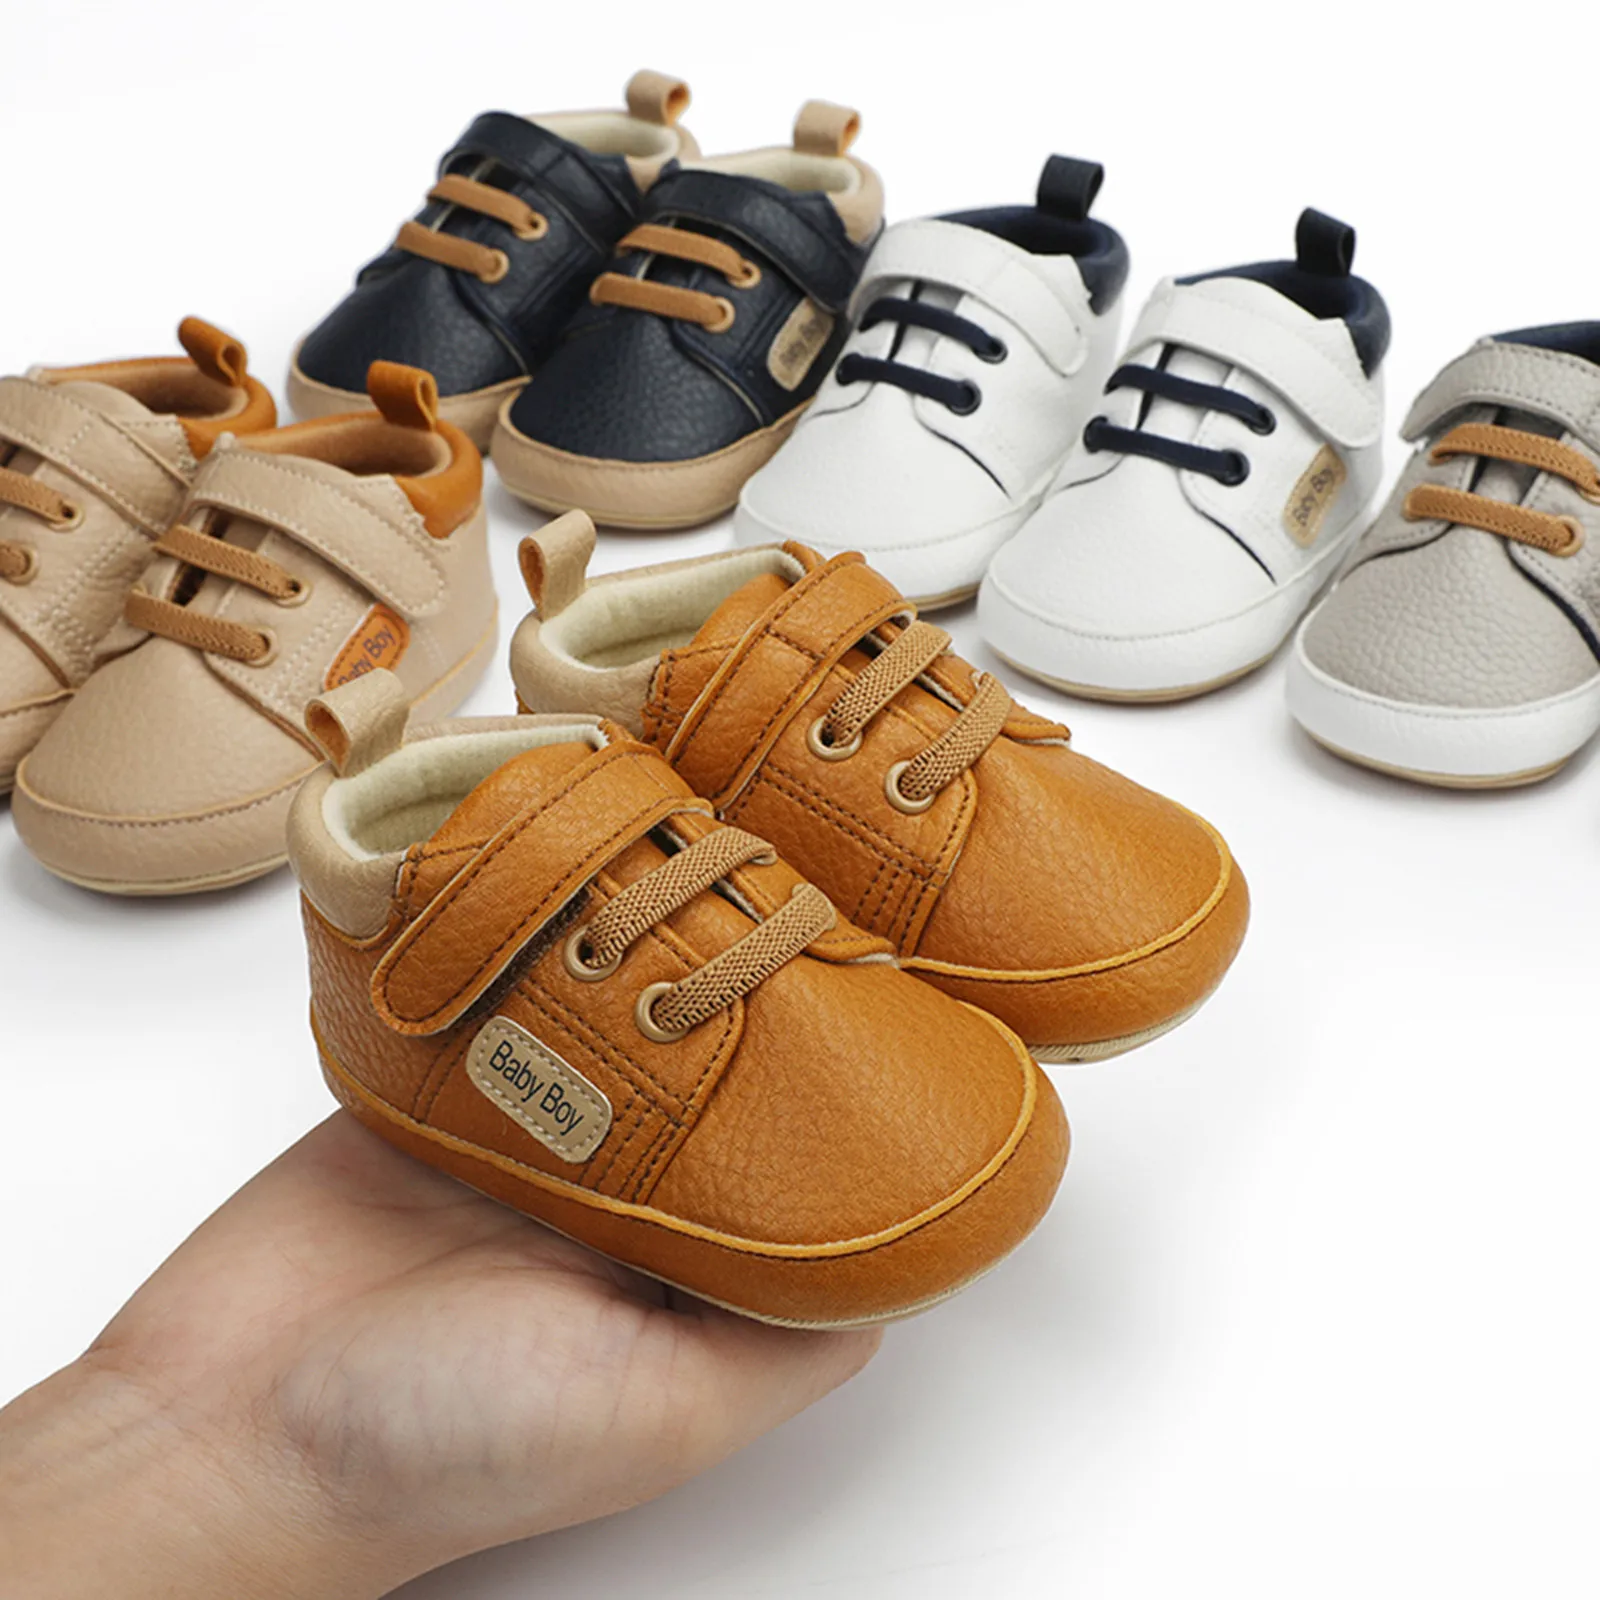 Обувь для младенцев, унисекс, кожаная спортивная обувь, противоскользящая обувь для новорожденных, обувь для мальчиков, обувь для первых шагов босоножки для новорожденных дышащие нескользящие обувь для мальчиков обувь для первых шагов удобная обувь с милым принтом для девочек